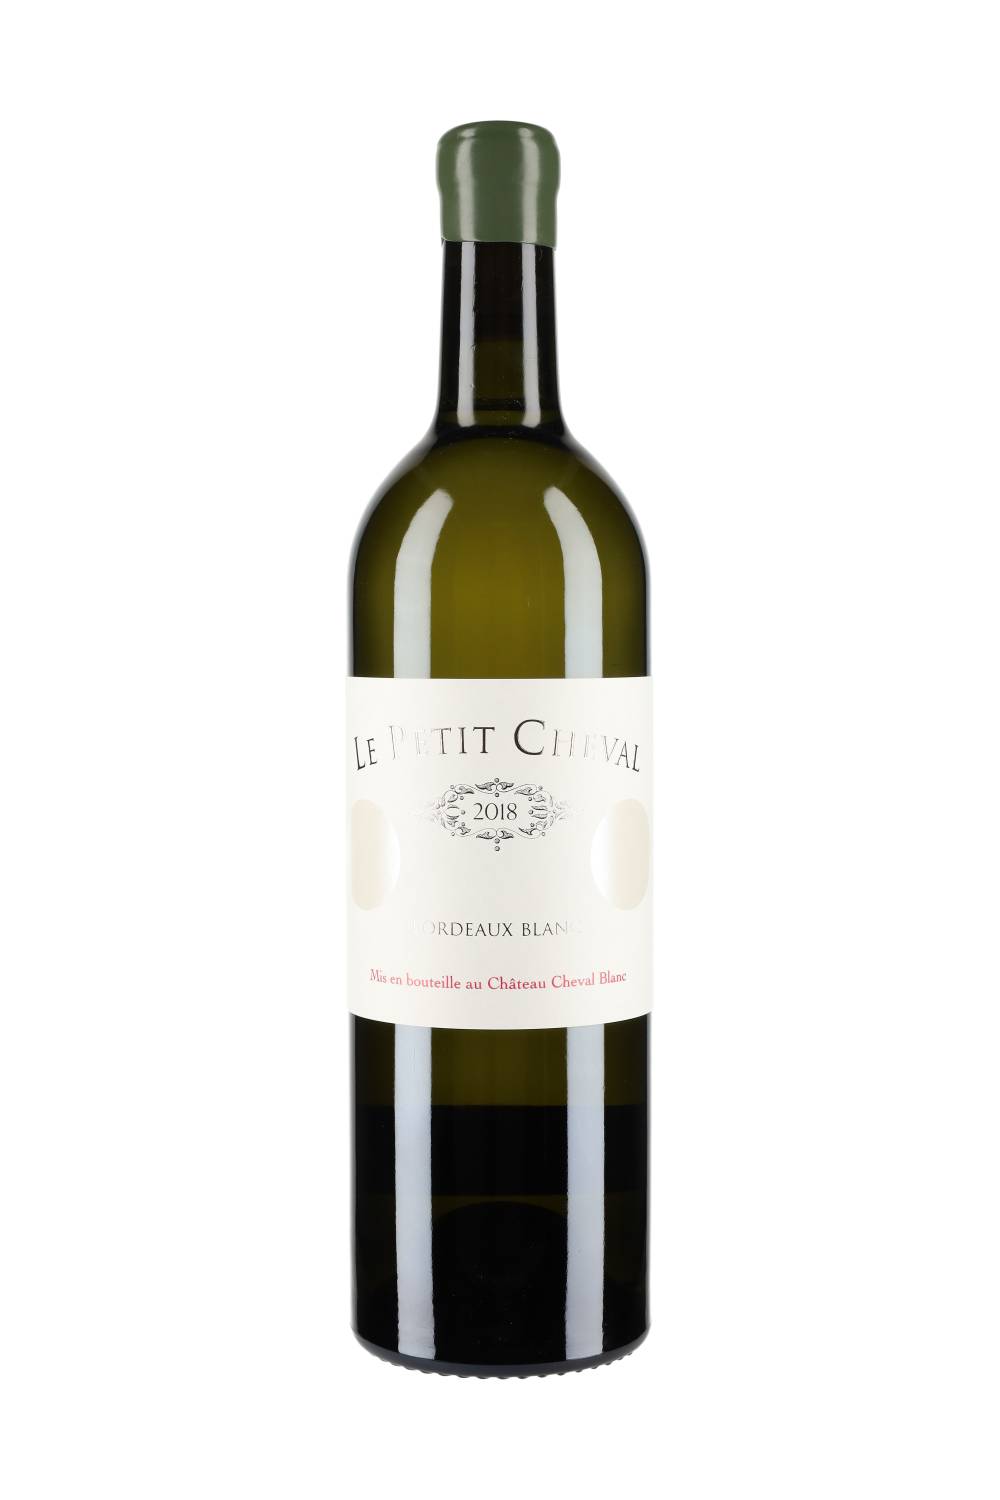 Château Cheval Blanc Le Petit Cheval Bordeaux Blanc 2018